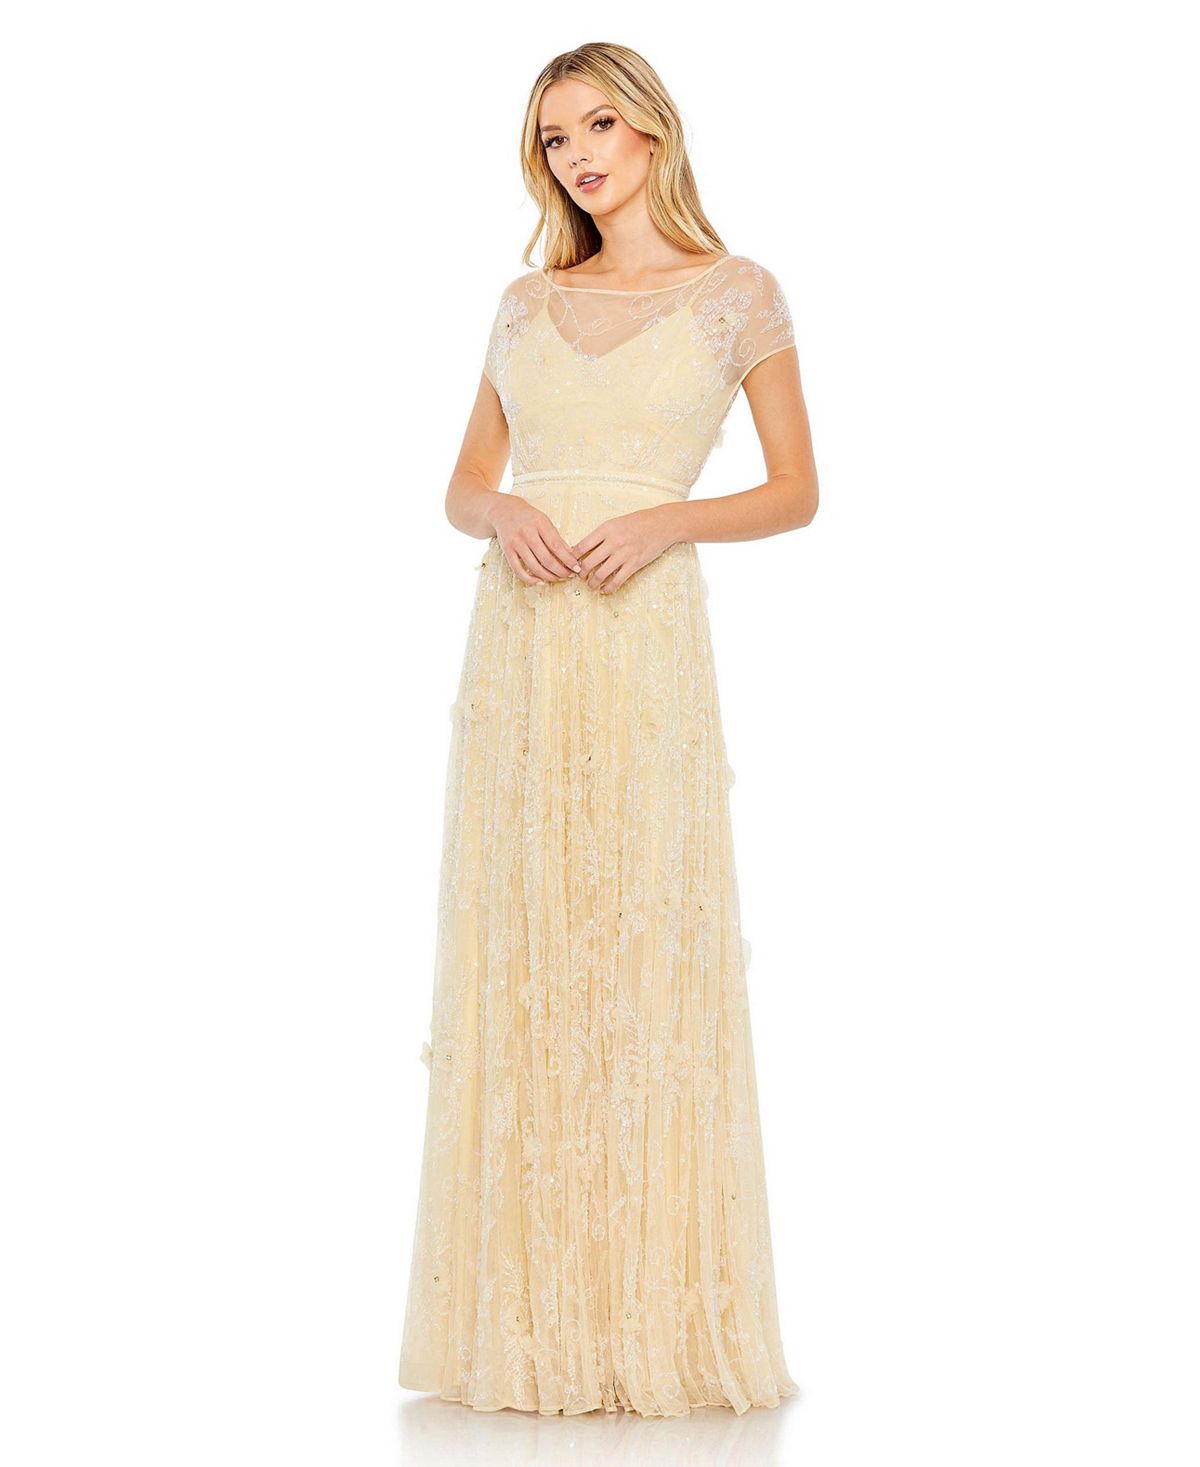 Женское украшенное иллюзорное платье с короткими рукавами MAC DUGGAL buttercup flower veiner